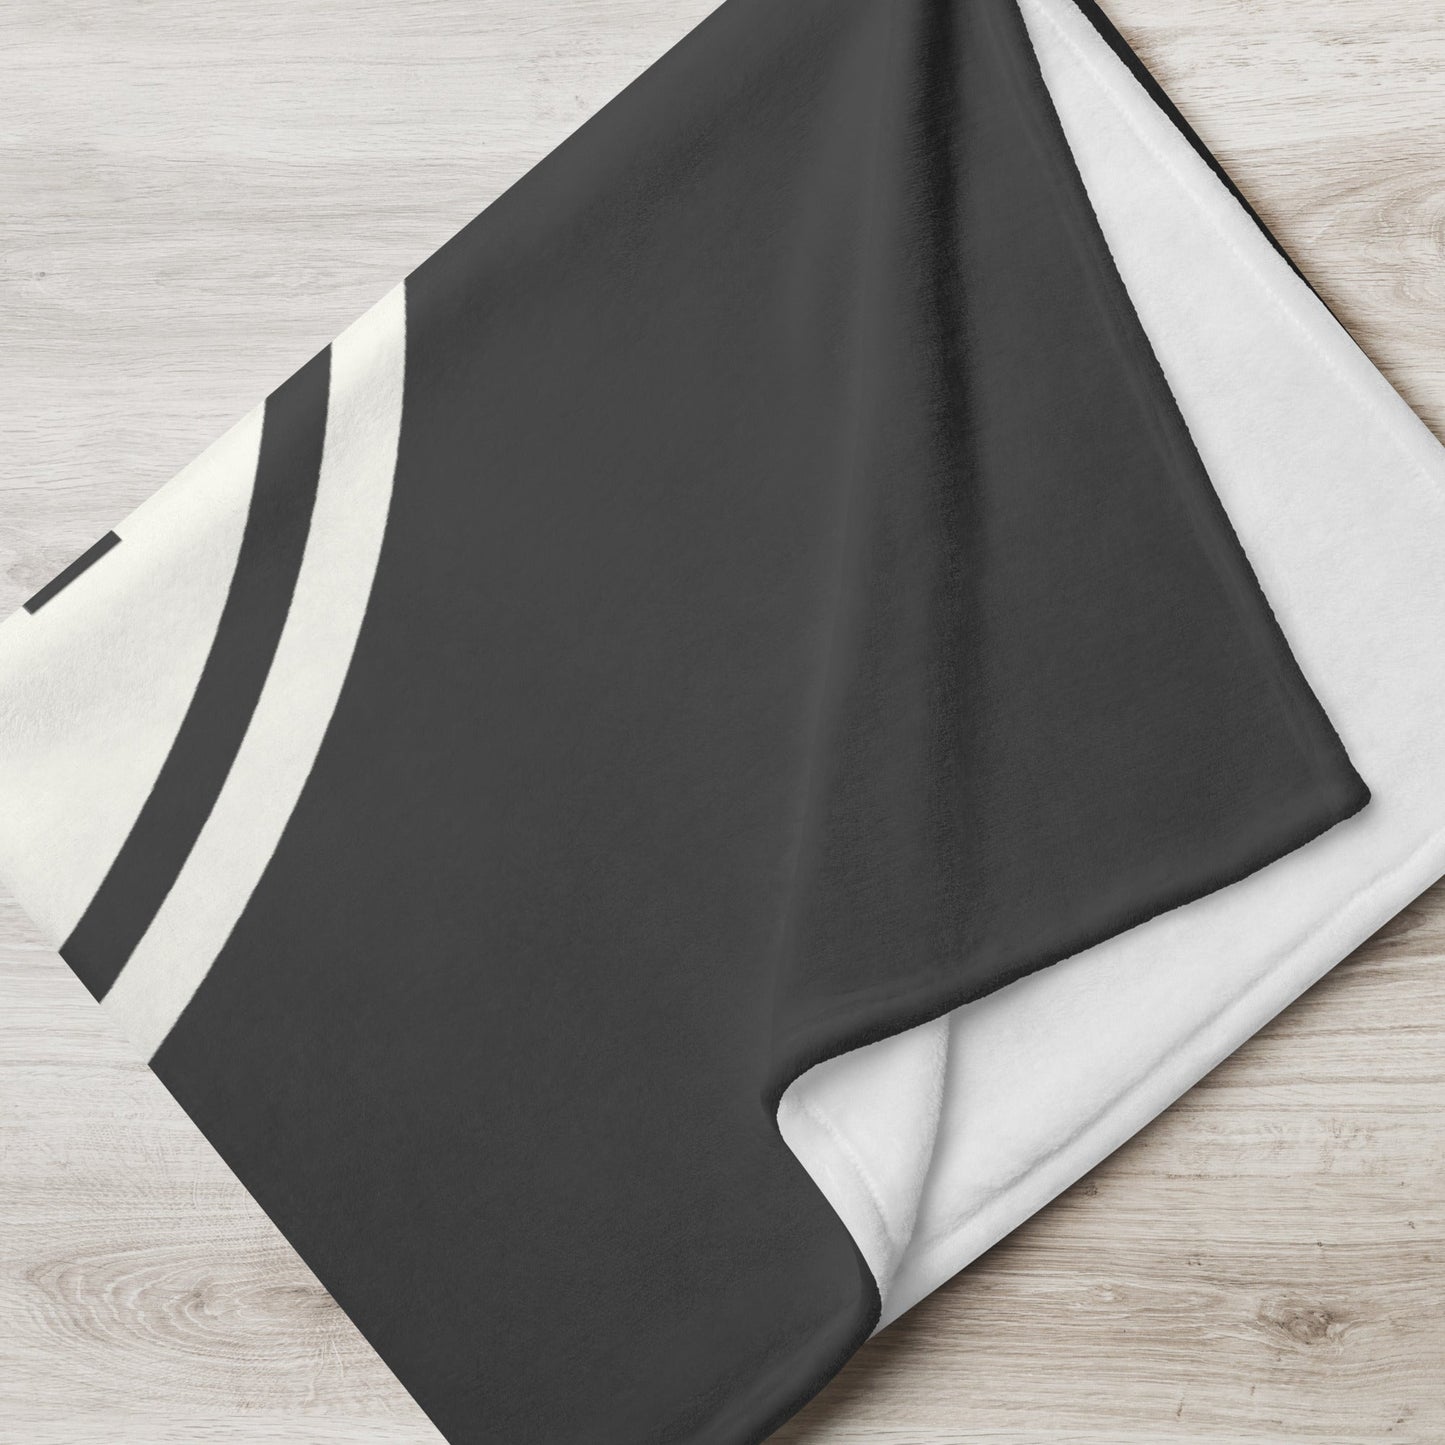 Unique Travel Gift Throw Blanket - White Oval • MIA Miami • YHM Designs - Image 05